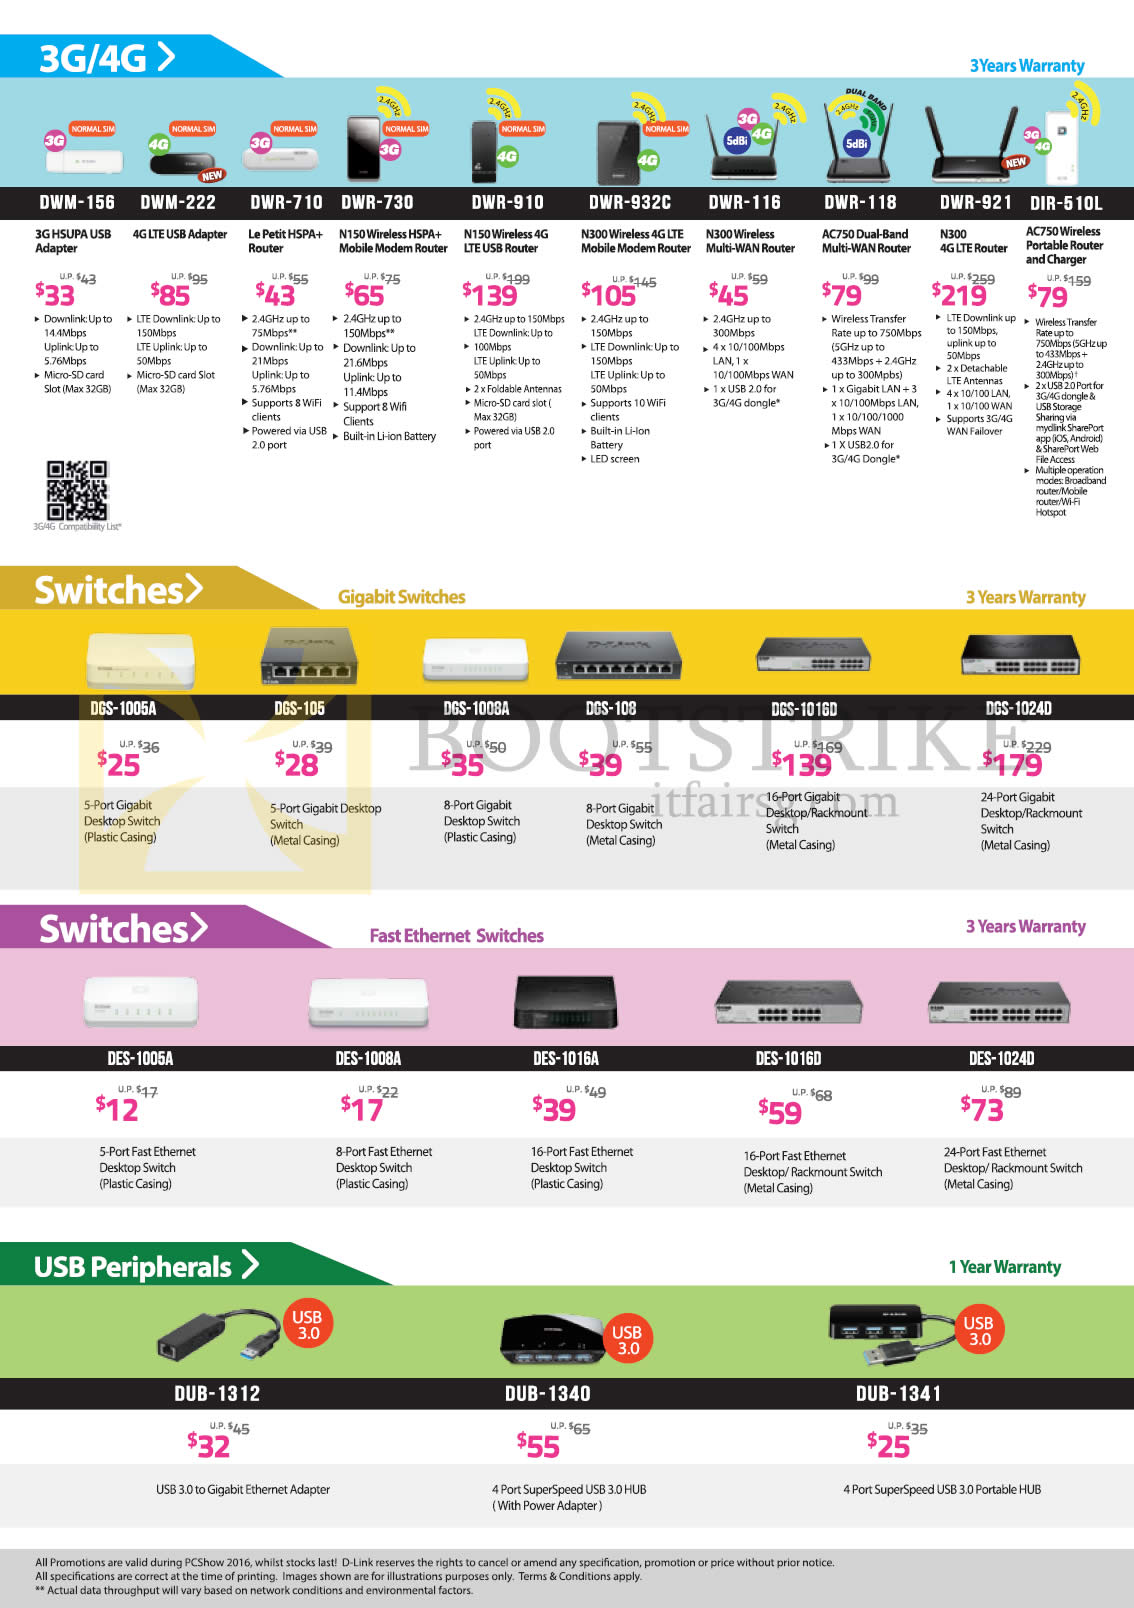 PC SHOW 2016 price list image brochure of D-Link Networking Routers, Switches, USB Peripherals, DWM-156, 222, 710, 730, 910, 932C, 921, DIR-510L, DGS-1005A, 1016D, 1024D, DES-1005A, 1008A, 1024D, DUB-1312